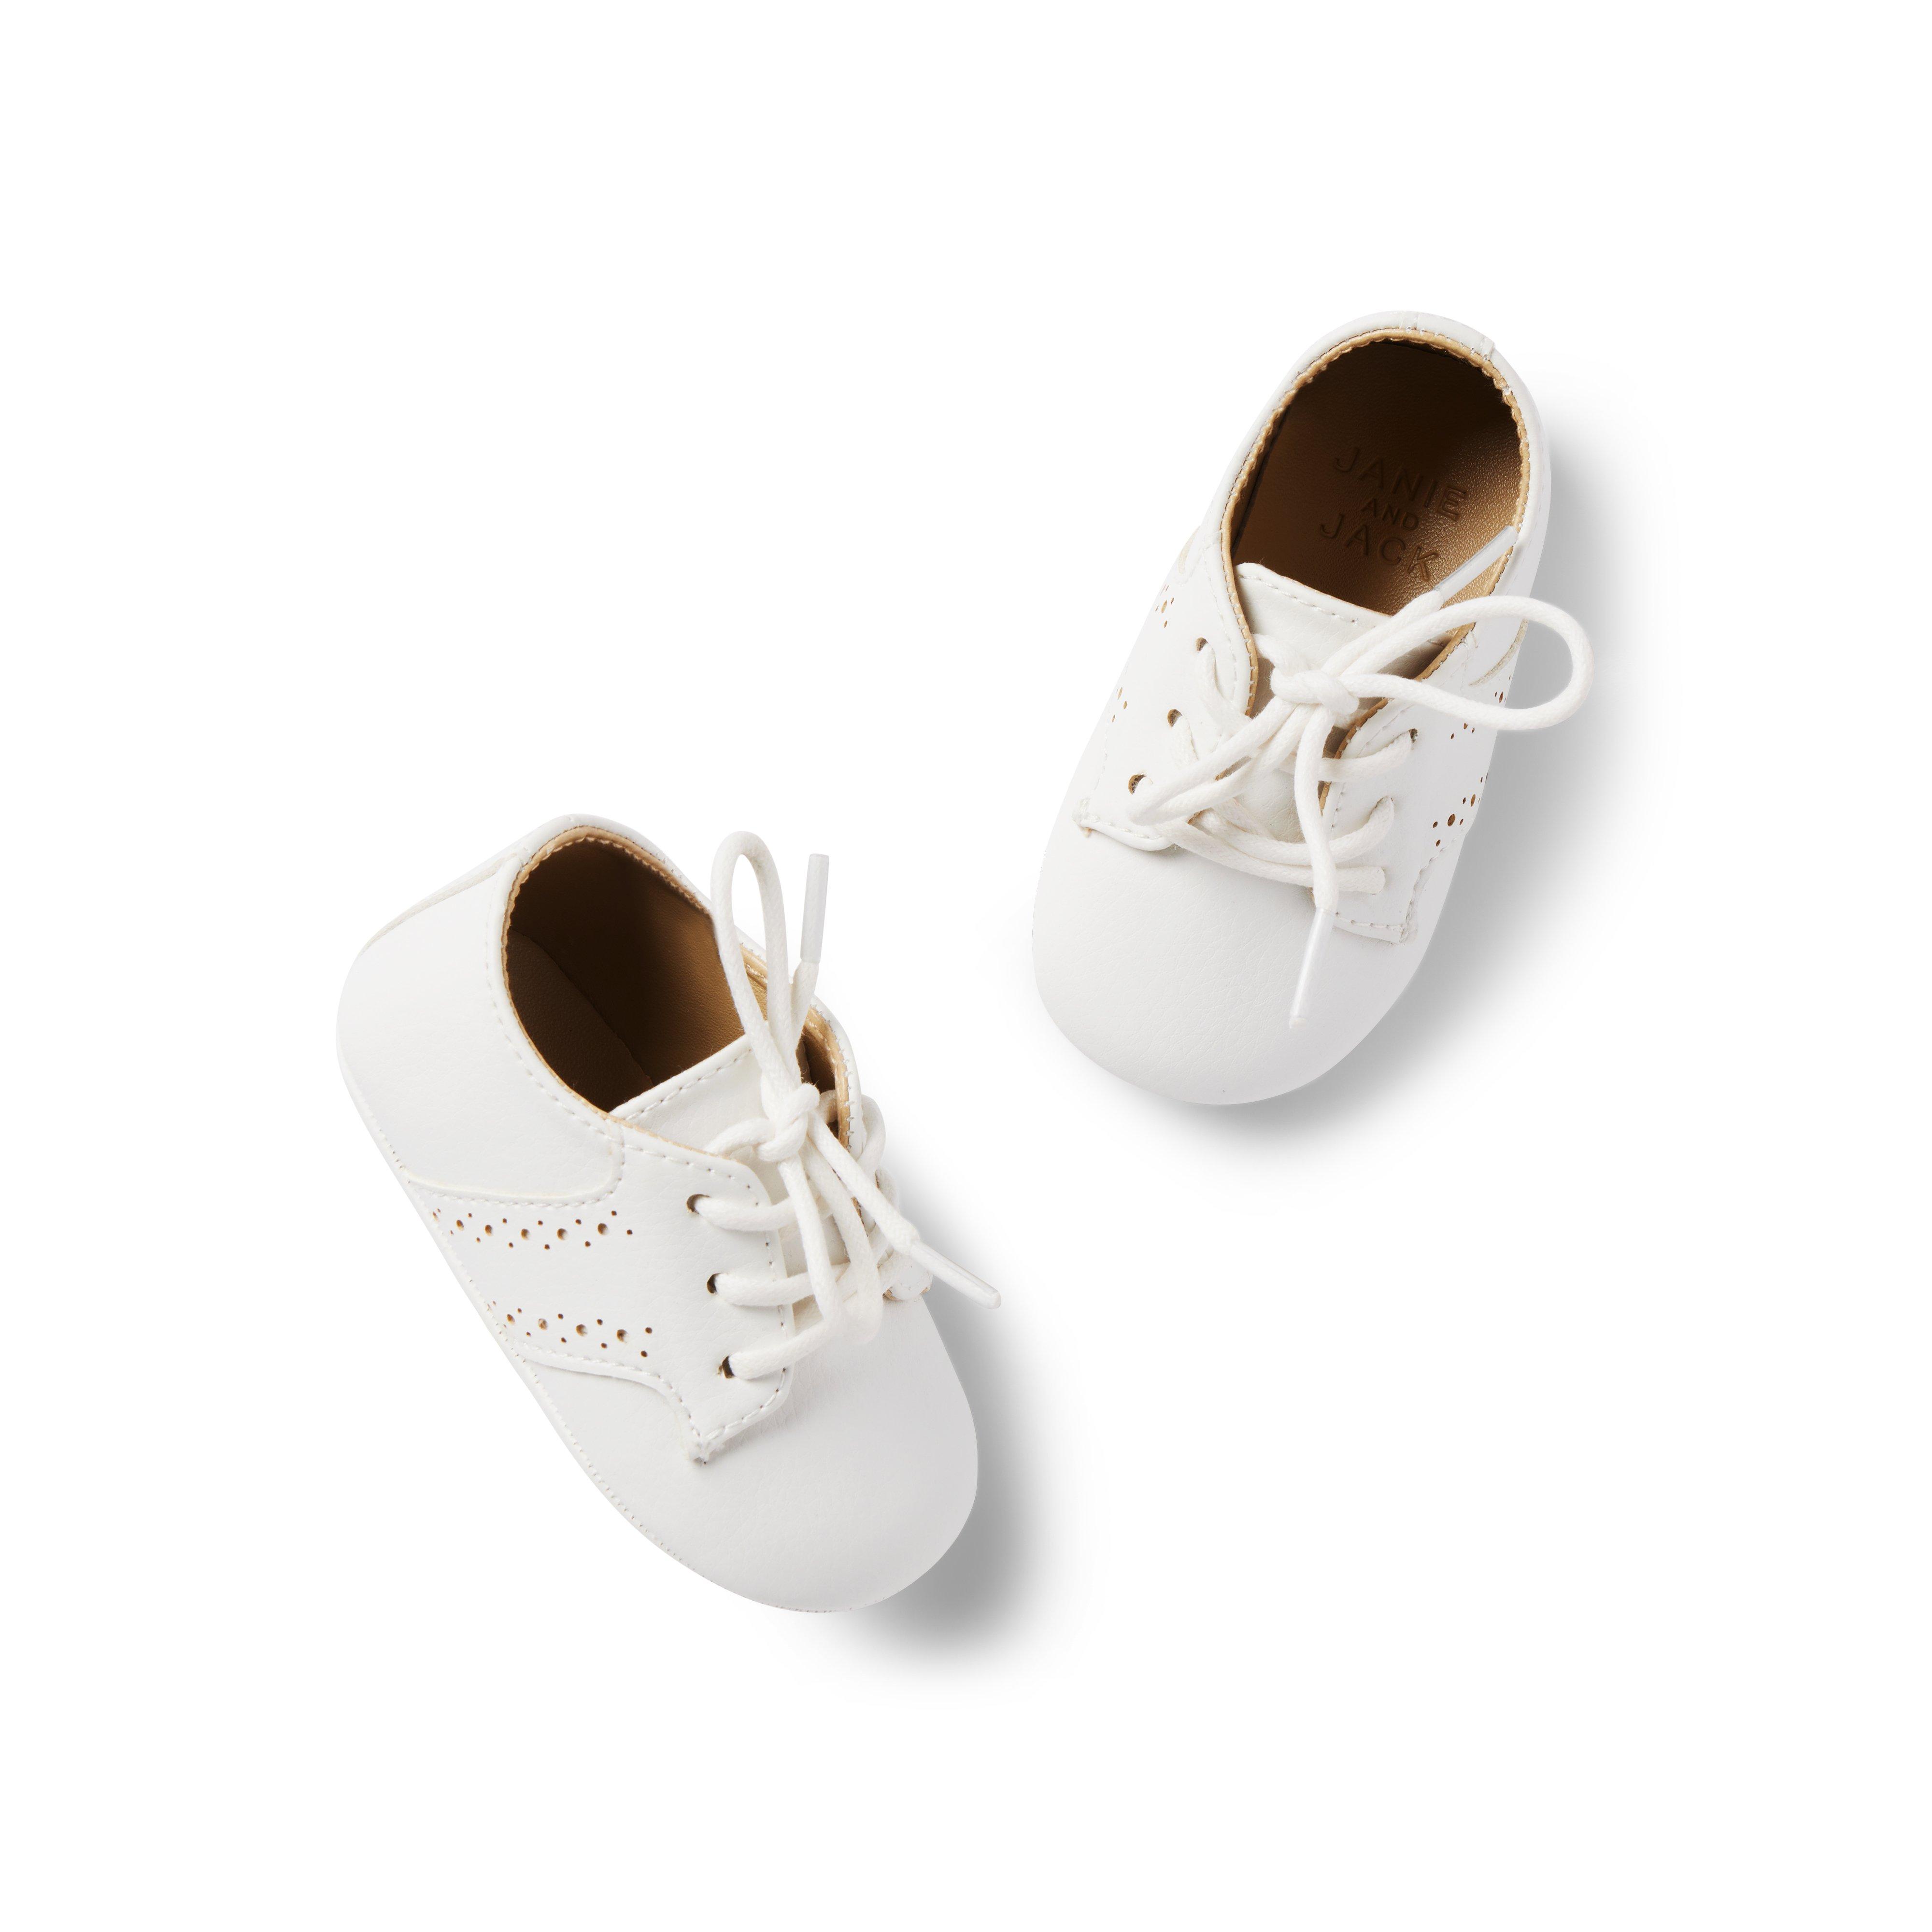 Baby Saddle Shoe